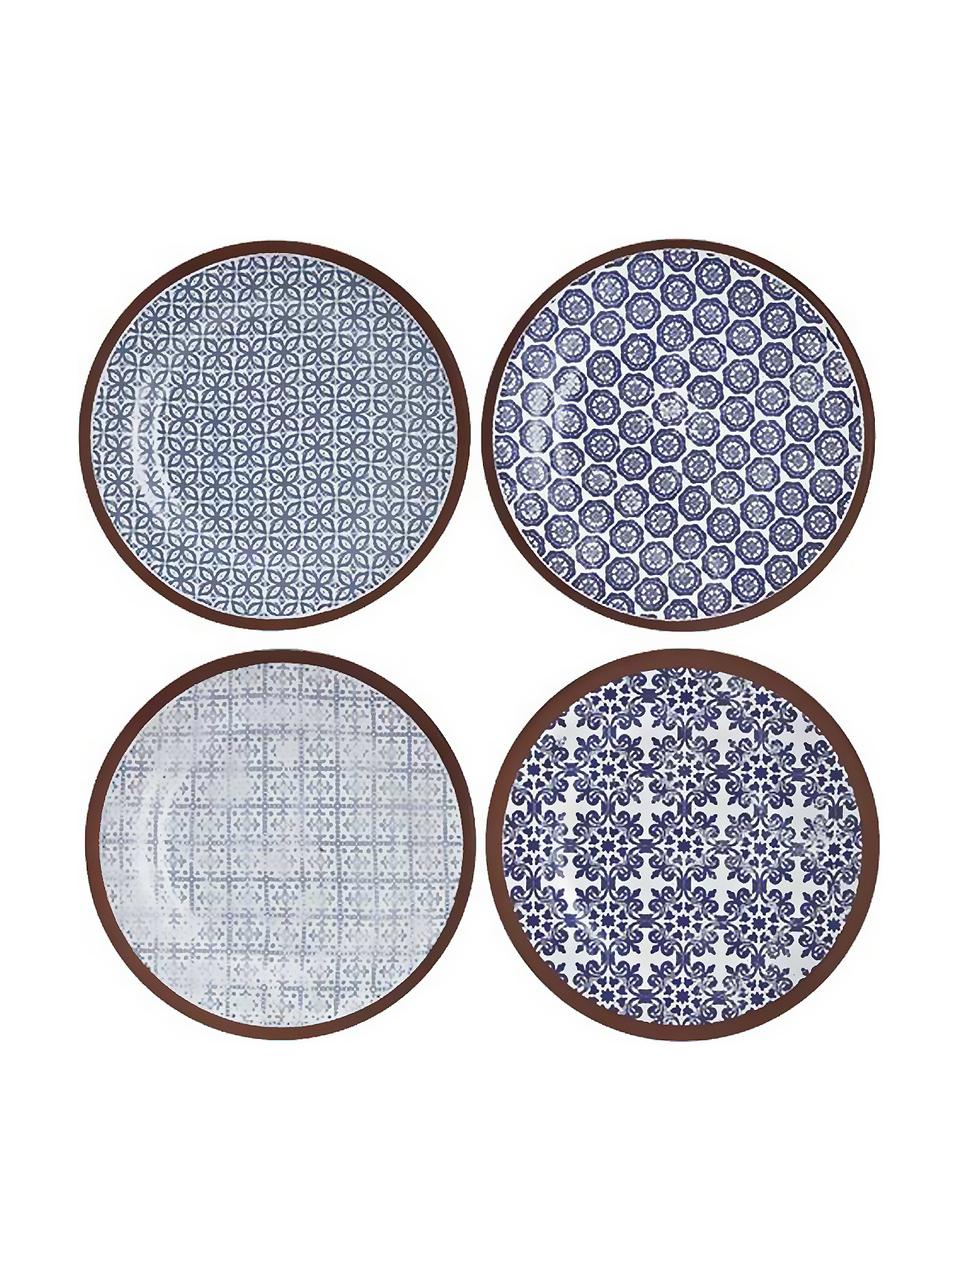 Súprava ručne vyrobených raňajkových tanierov Tapas, 4 diely, Modrá, biela, hnedá